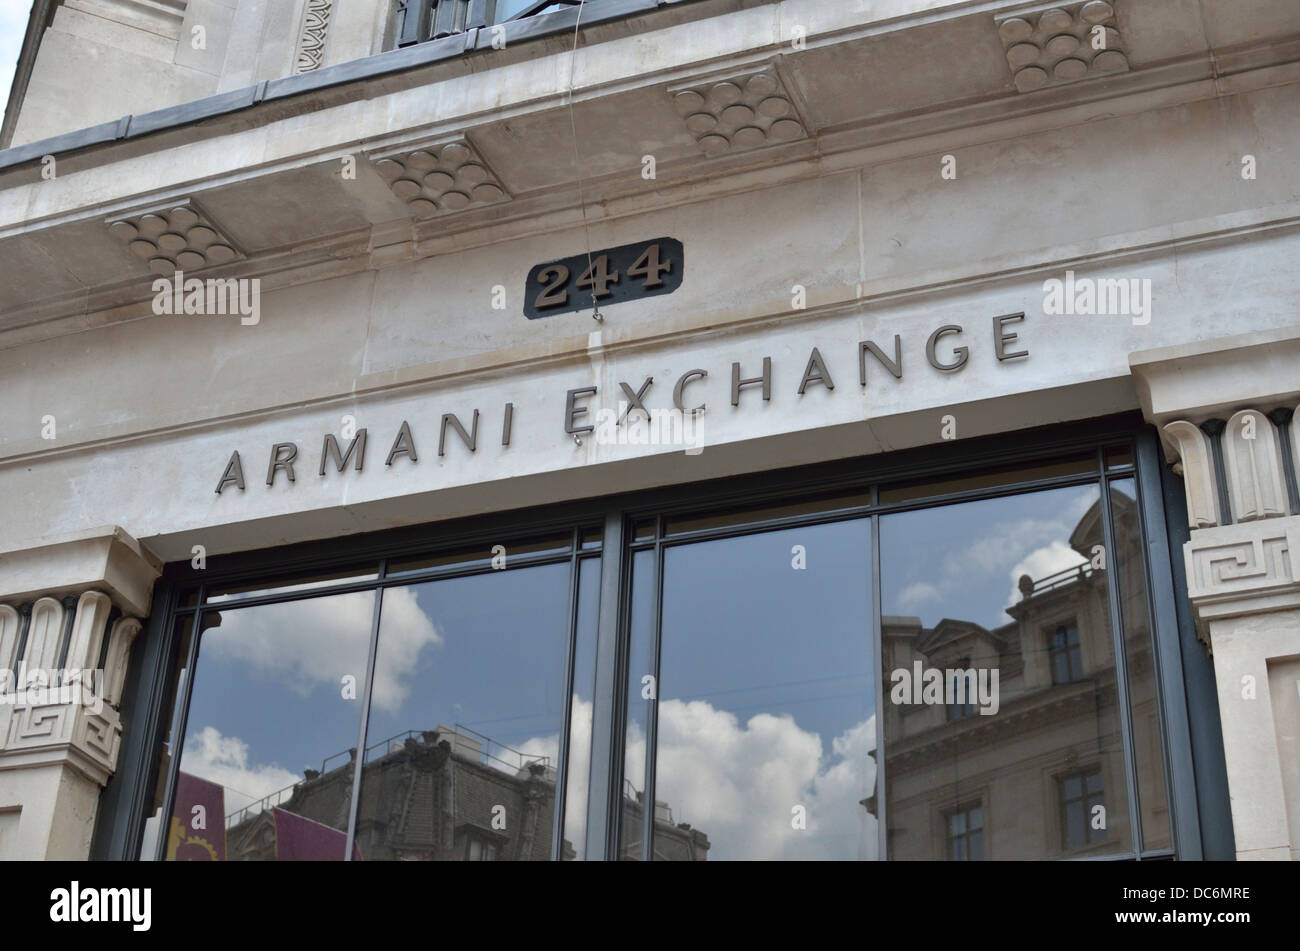 armani exchange uk stores